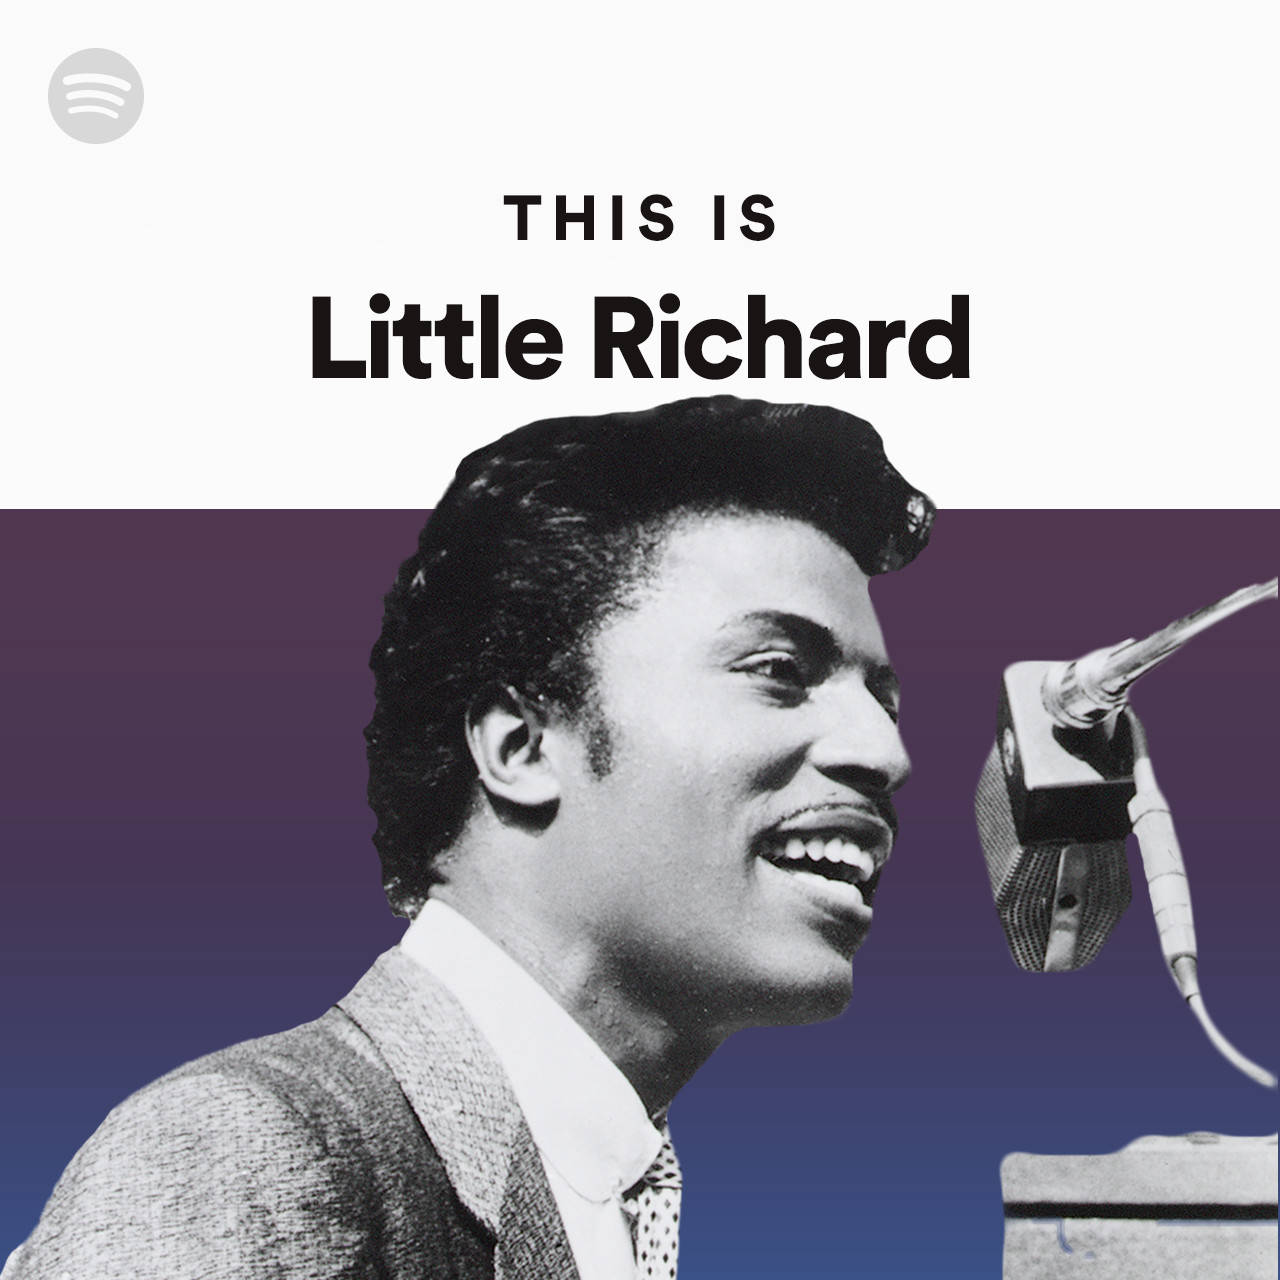 Dettaär Omslaget Till Little Richard Spotify-spellistan. Wallpaper